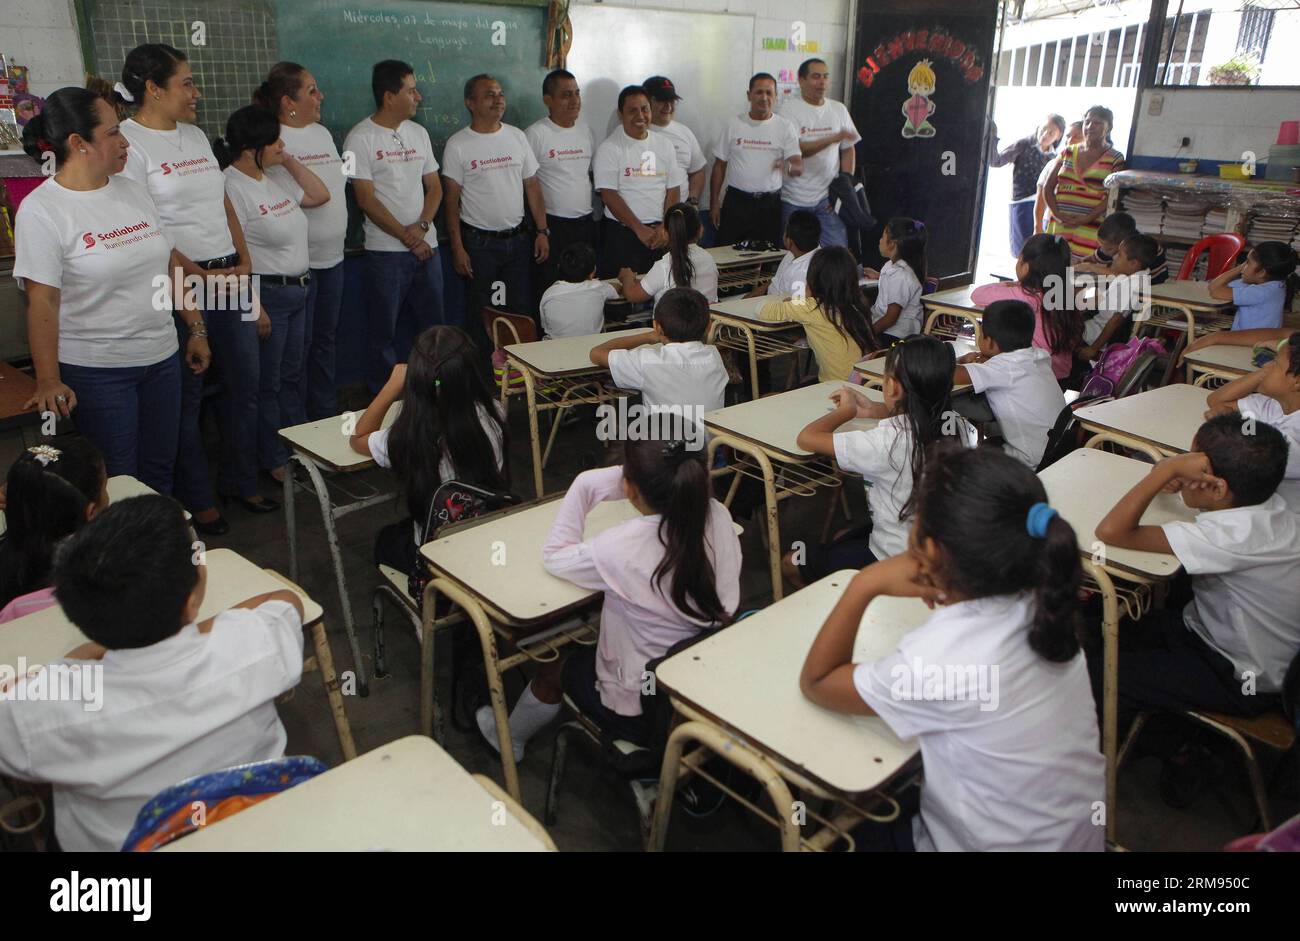 Des bénévoles d’une agence bancaire participent à une livraison de sacs à dos aux enfants d’une institution éducative, dans le cadre d’une initiative visant à contribuer au processus éducatif dans la municipalité d’Izalco, dans le département de Sonsonate, à 65 km à l’ouest de San Salvador, capitale du Salvador, le 7 mai 2014. (Xinhua/Oscar Rivera) (rt) EL SALVADOR-IZALCO-SOCIETY-VOLUNTEERS PUBLICATIONxNOTxINxCHN les volontaires d'une agence bancaire participent à une livraison de sac à dos aux enfants de l'institution éducative dans le cadre de l'Initiative pour contribuer au processus d'éducation dans la municipalité dans le Depar Banque D'Images